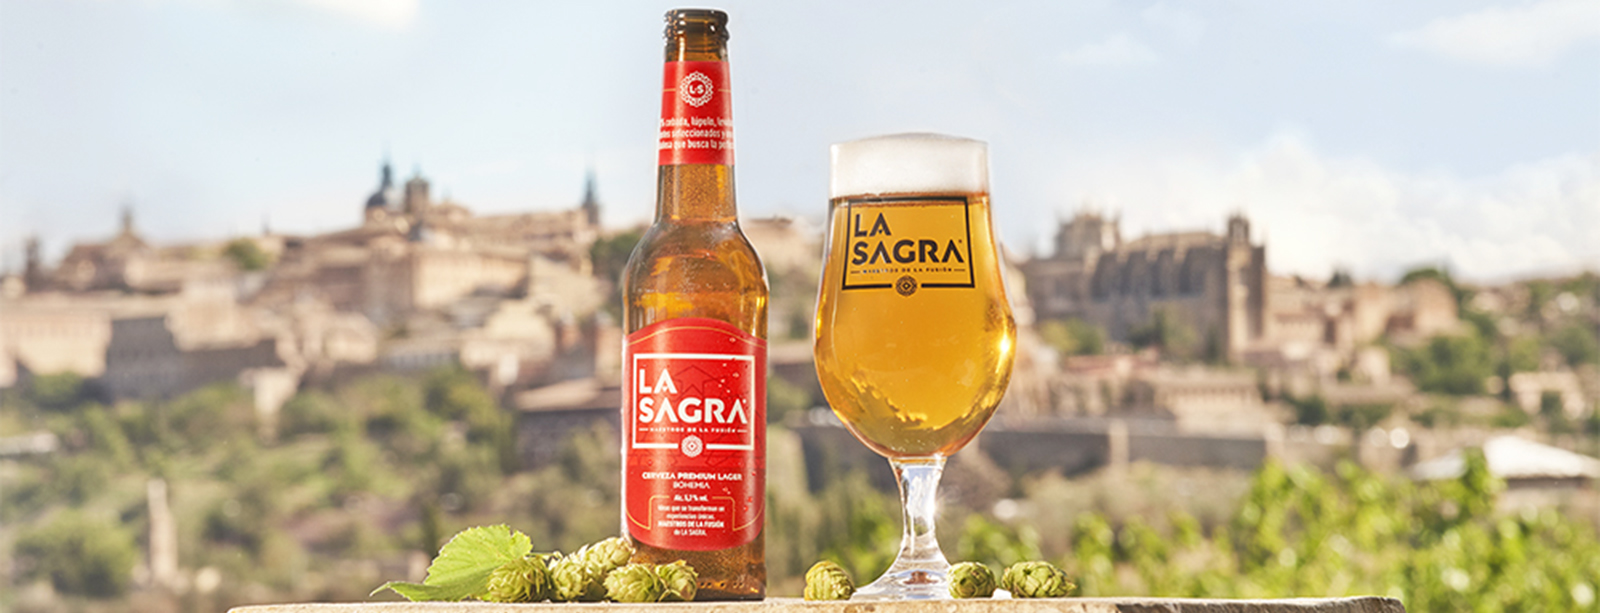 Enhorabuena a nuestro patrocinador cerveza La Sagra, premiada como la mejor cerveza de España